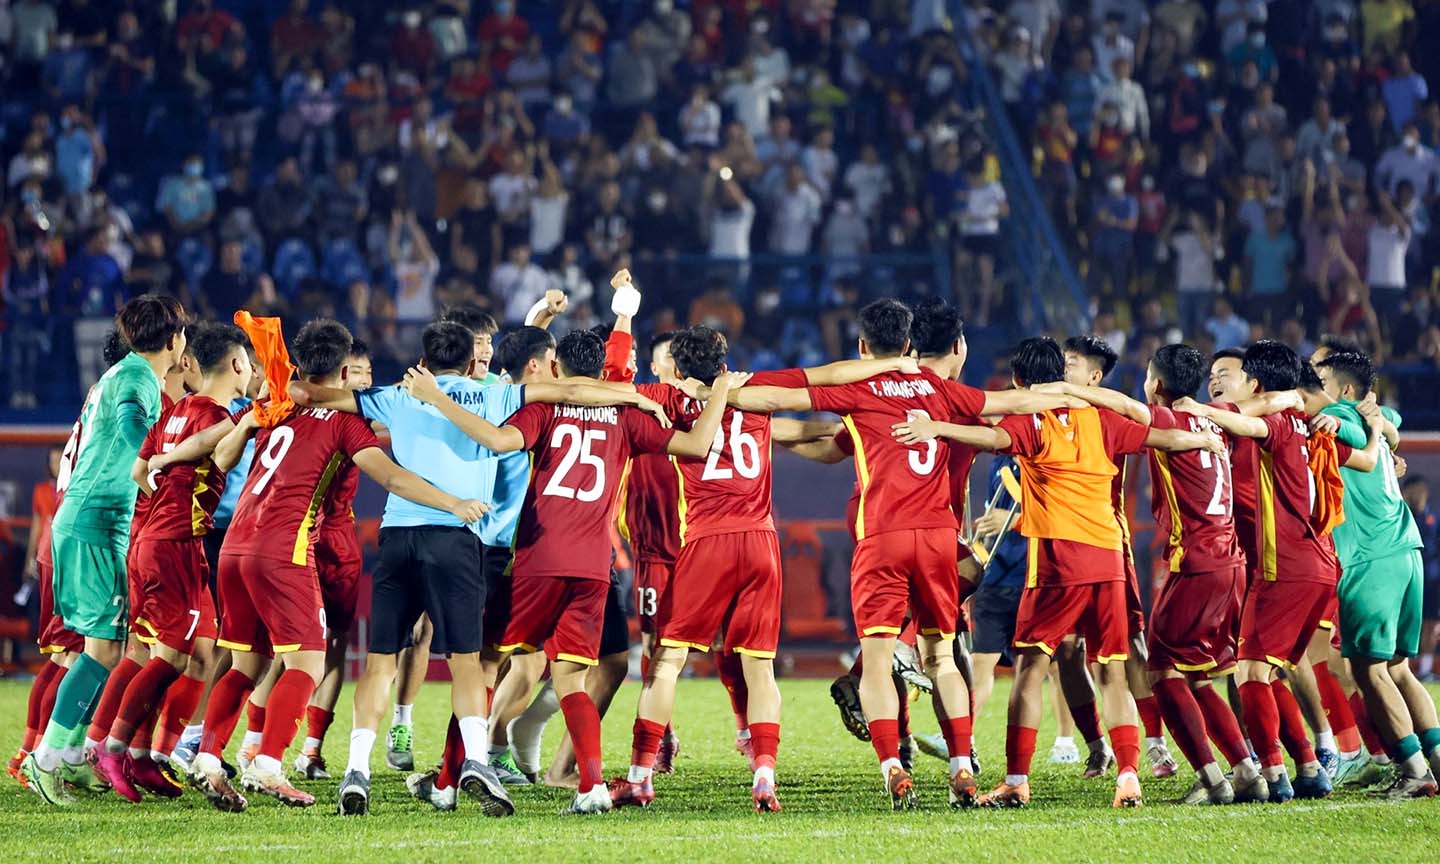 ĐT U20 Việt Nam đang hướng tới Vòng loại Cúp bóng đá U20 châu Á 2022 với sự chuẩn bị kỹ lưỡng.